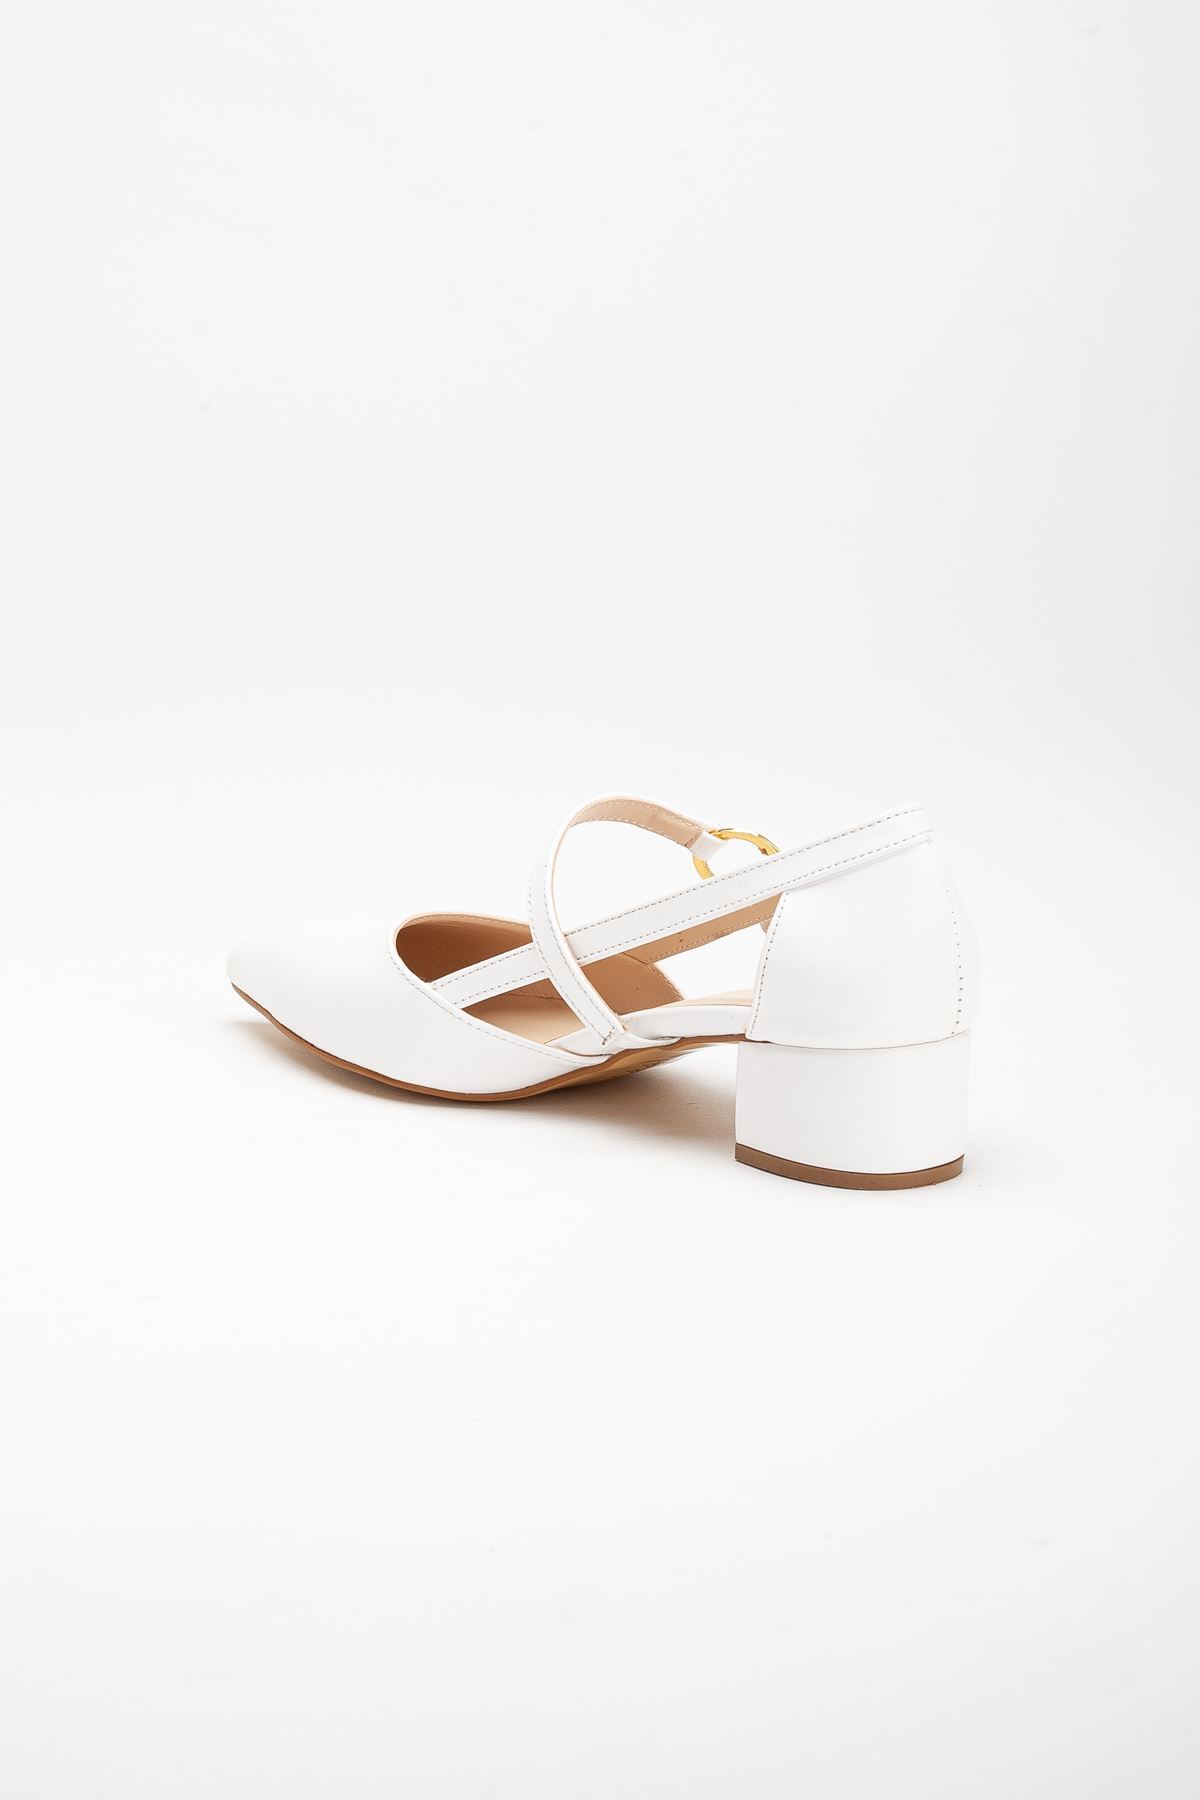 Loni Kadın Toka Detaylı Topuklu Ayakkabı Beyaz Cilt